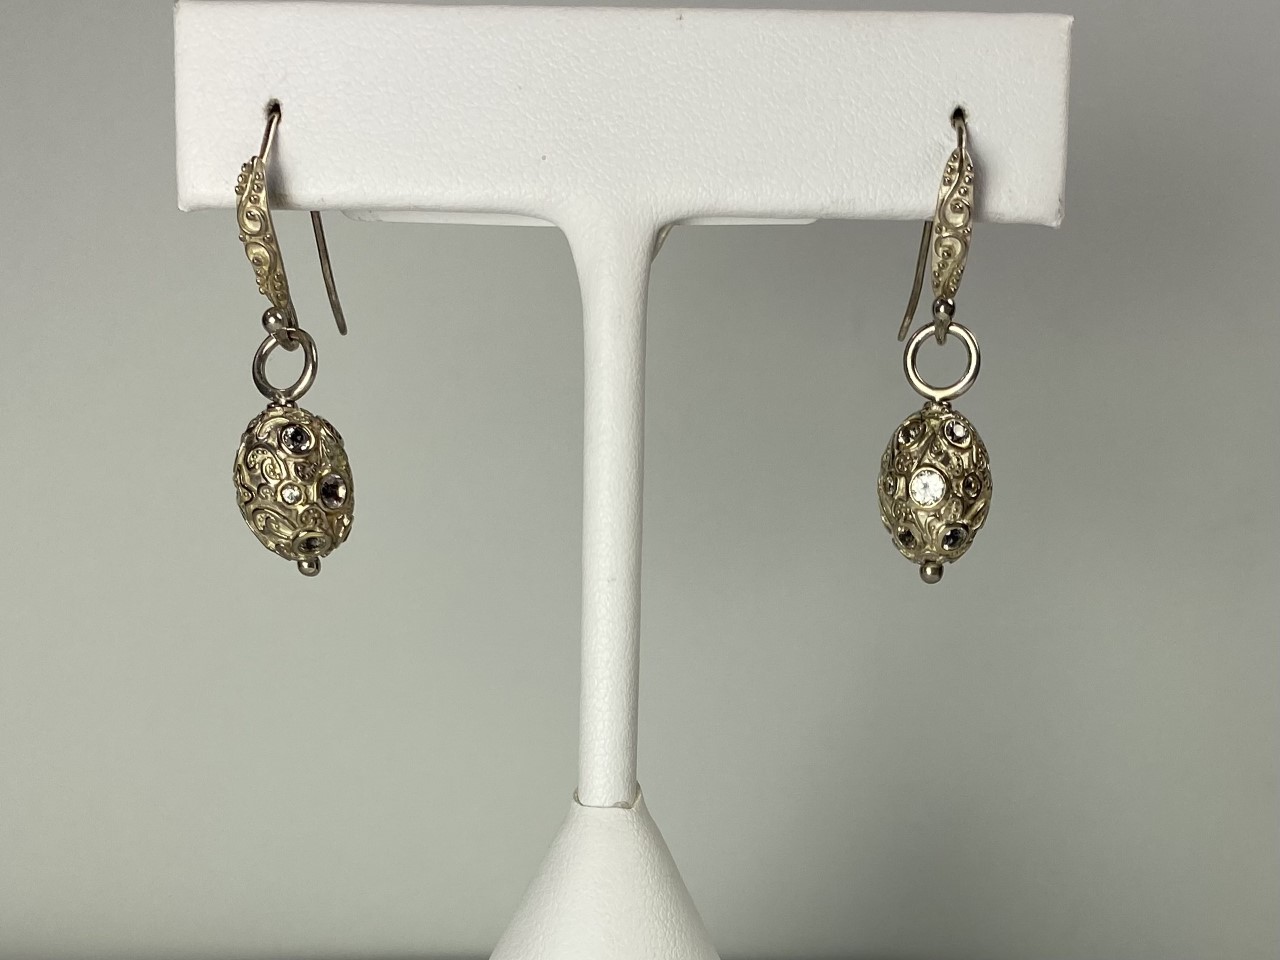 orb earrings